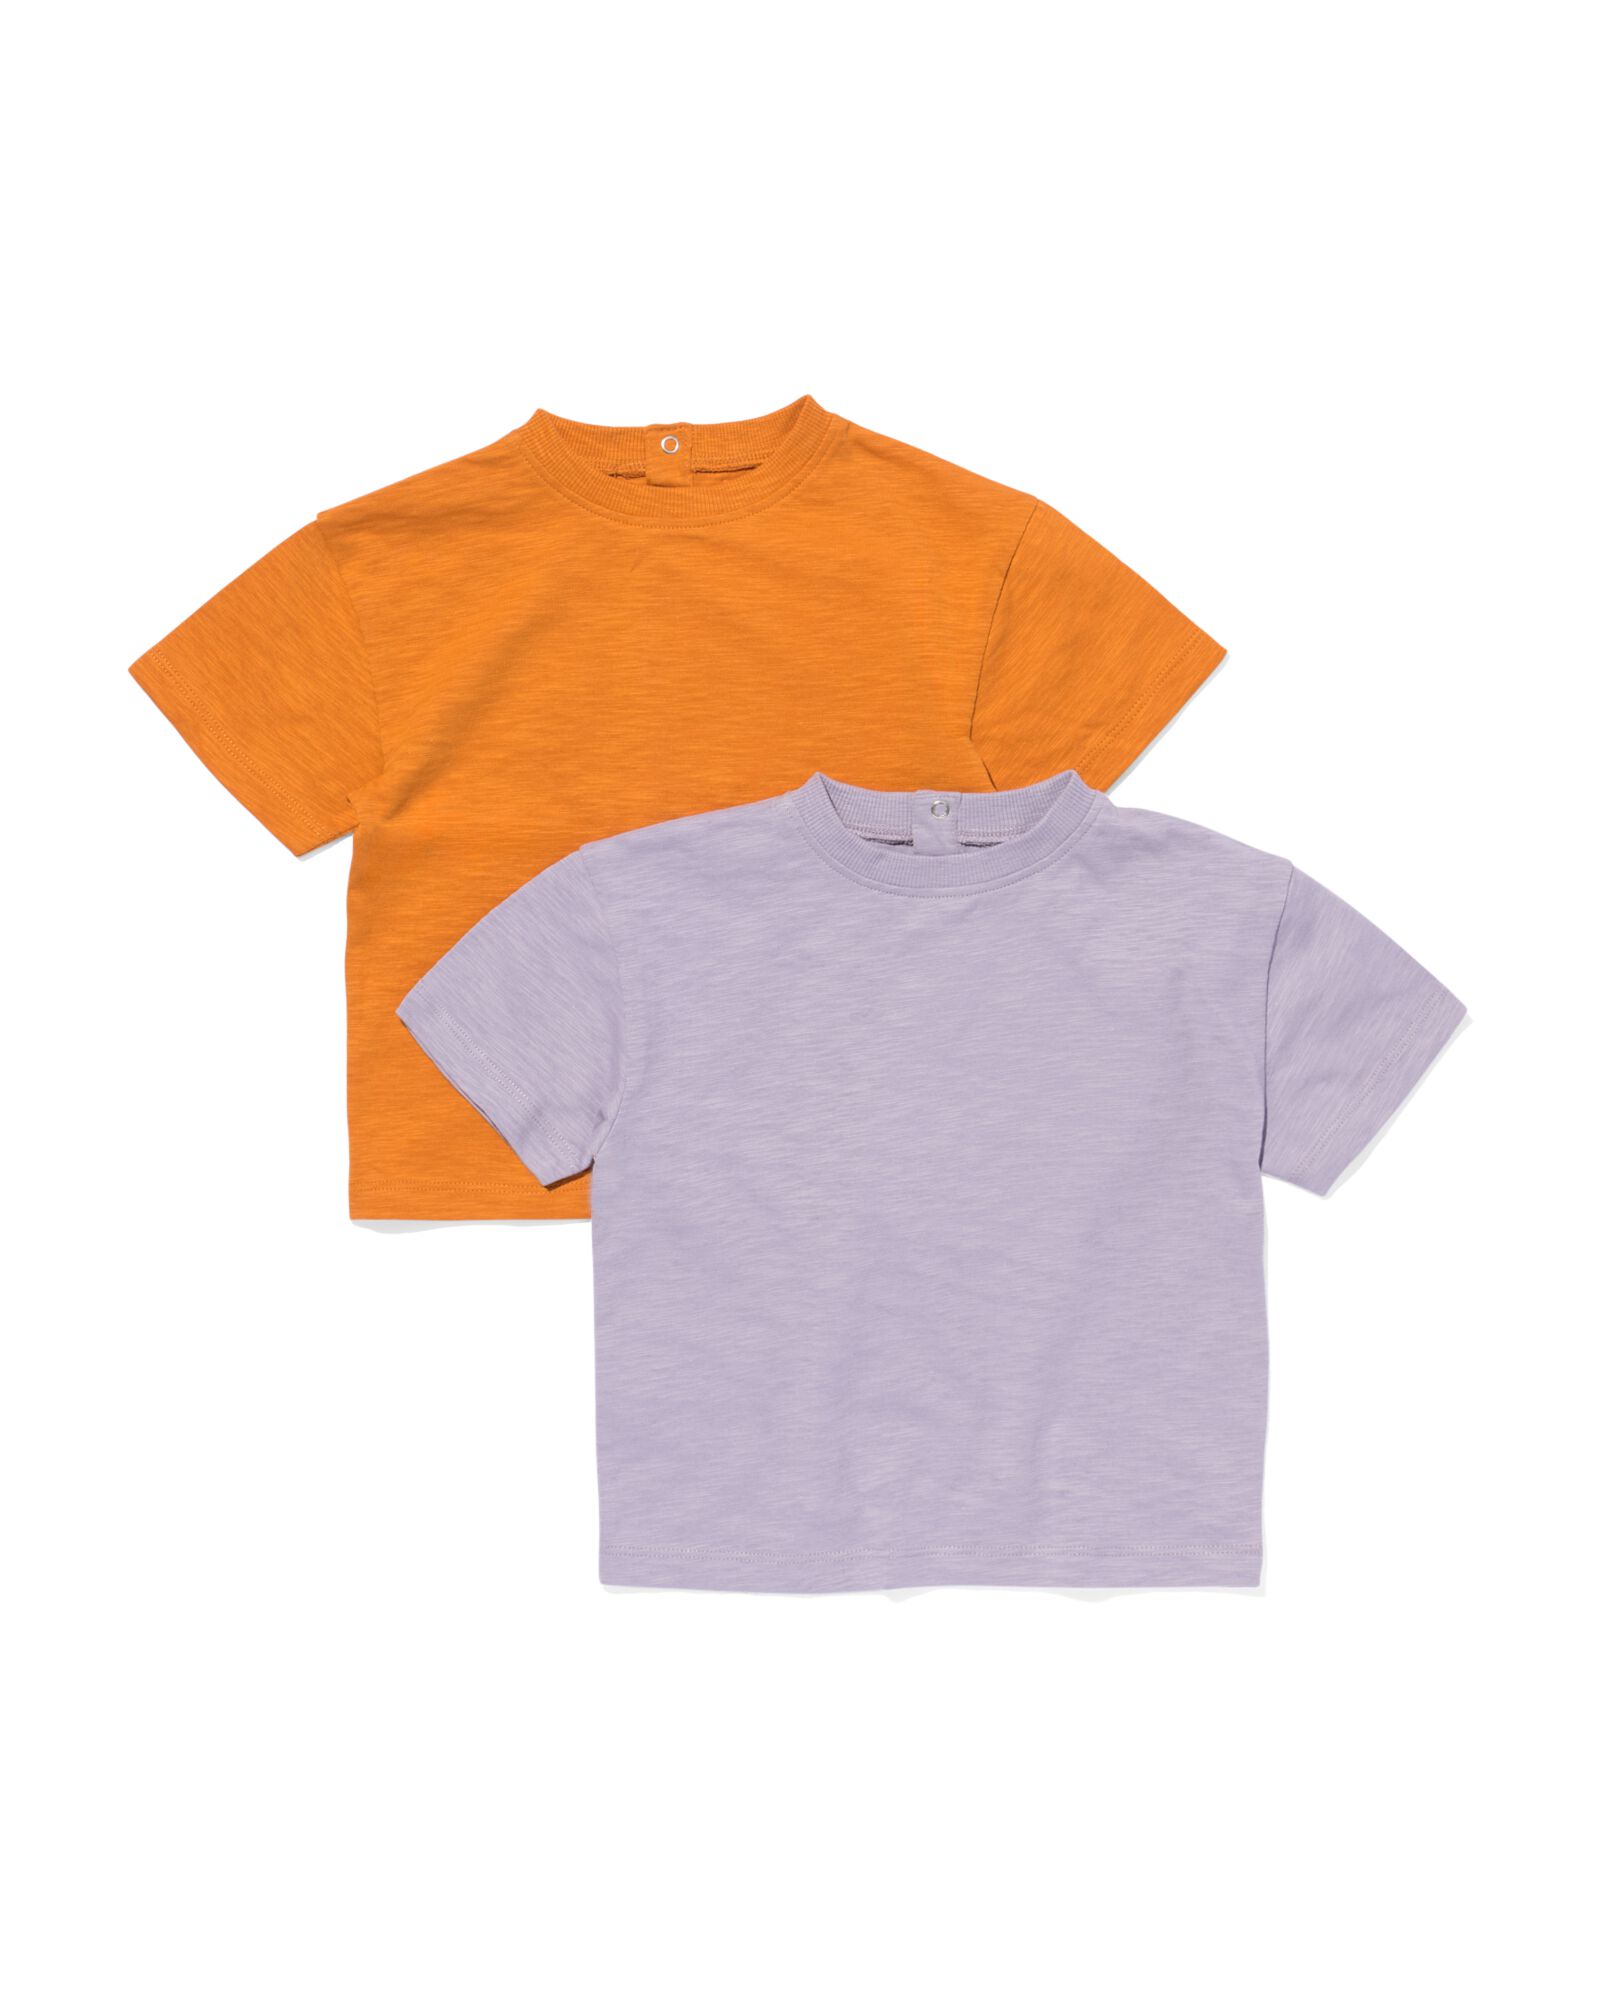 Image of HEMA Baby T-shirts - 2 Stuks Paars (paars)